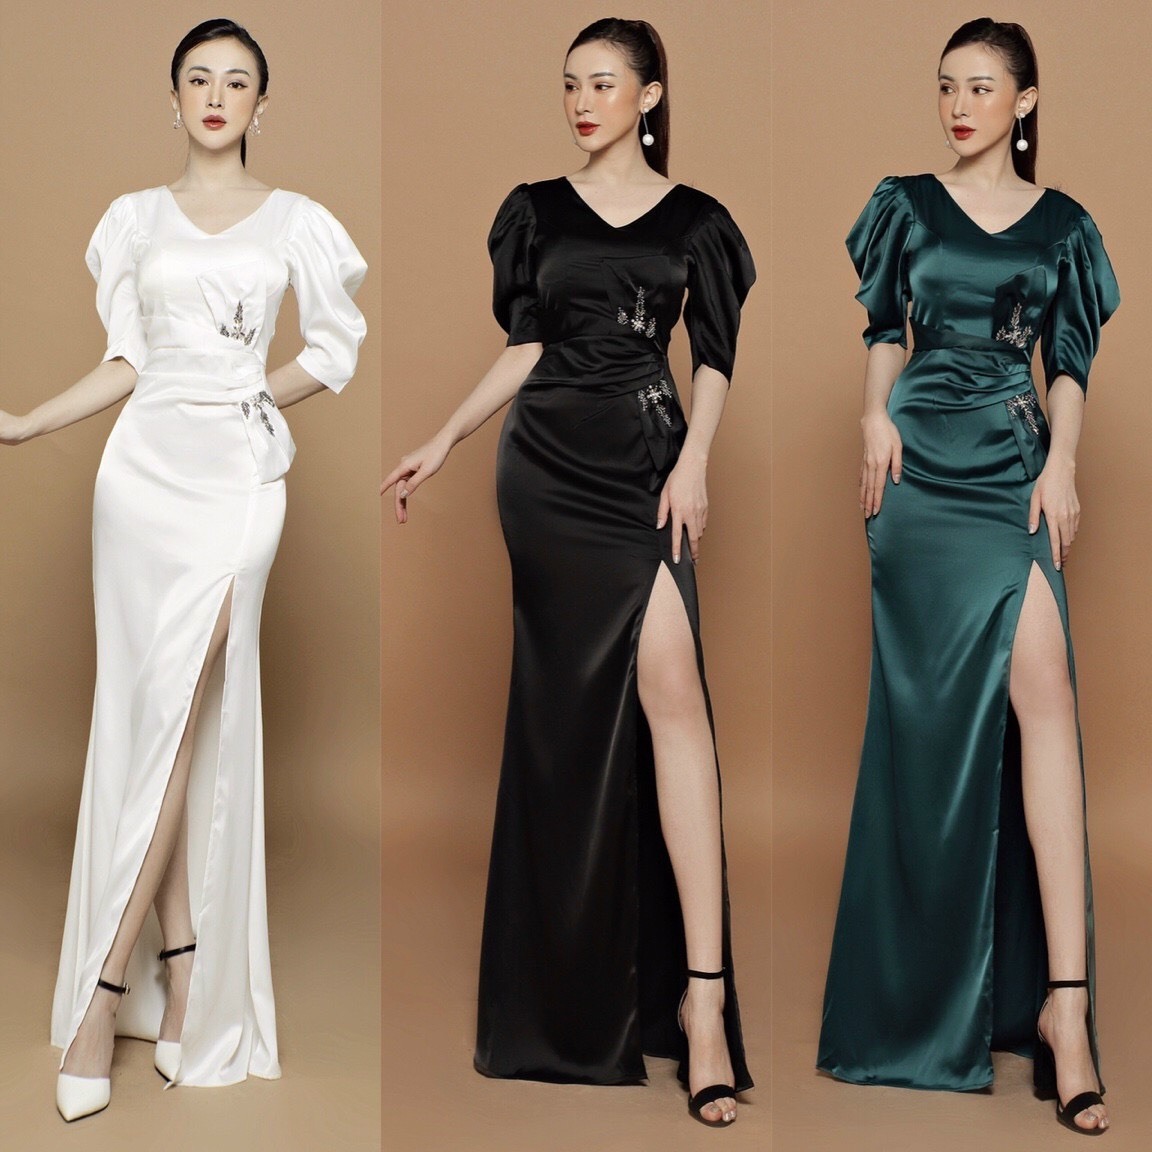 ĐẦM DẠ HỘI  100 Kiểu Đầm dạ hội cao cấp thiết kế đẹp được xem là những  bộ đầm dạ hội đẹp nhất P2  YouTube